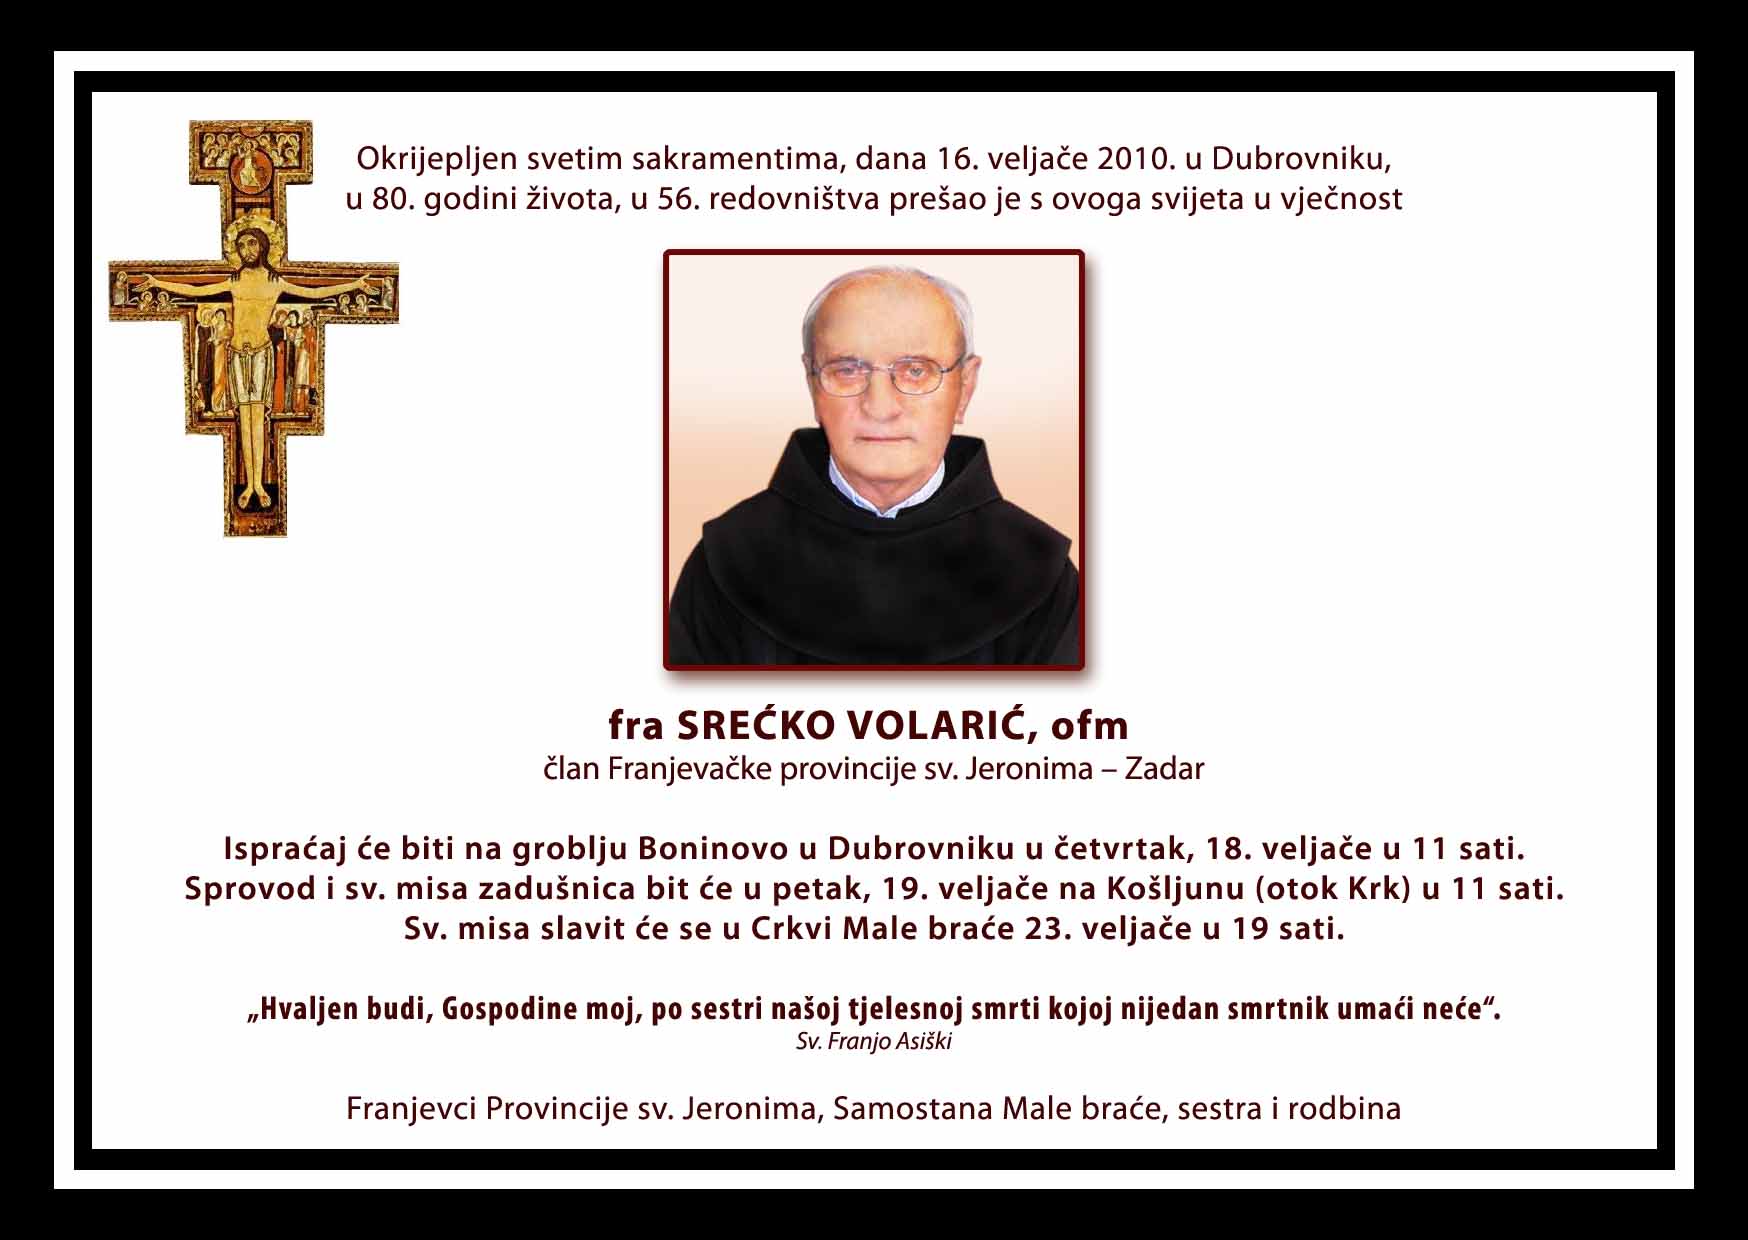 Osmrtnica fra Srećka Volarić umro u Dubrovniku 16. II. 2010.